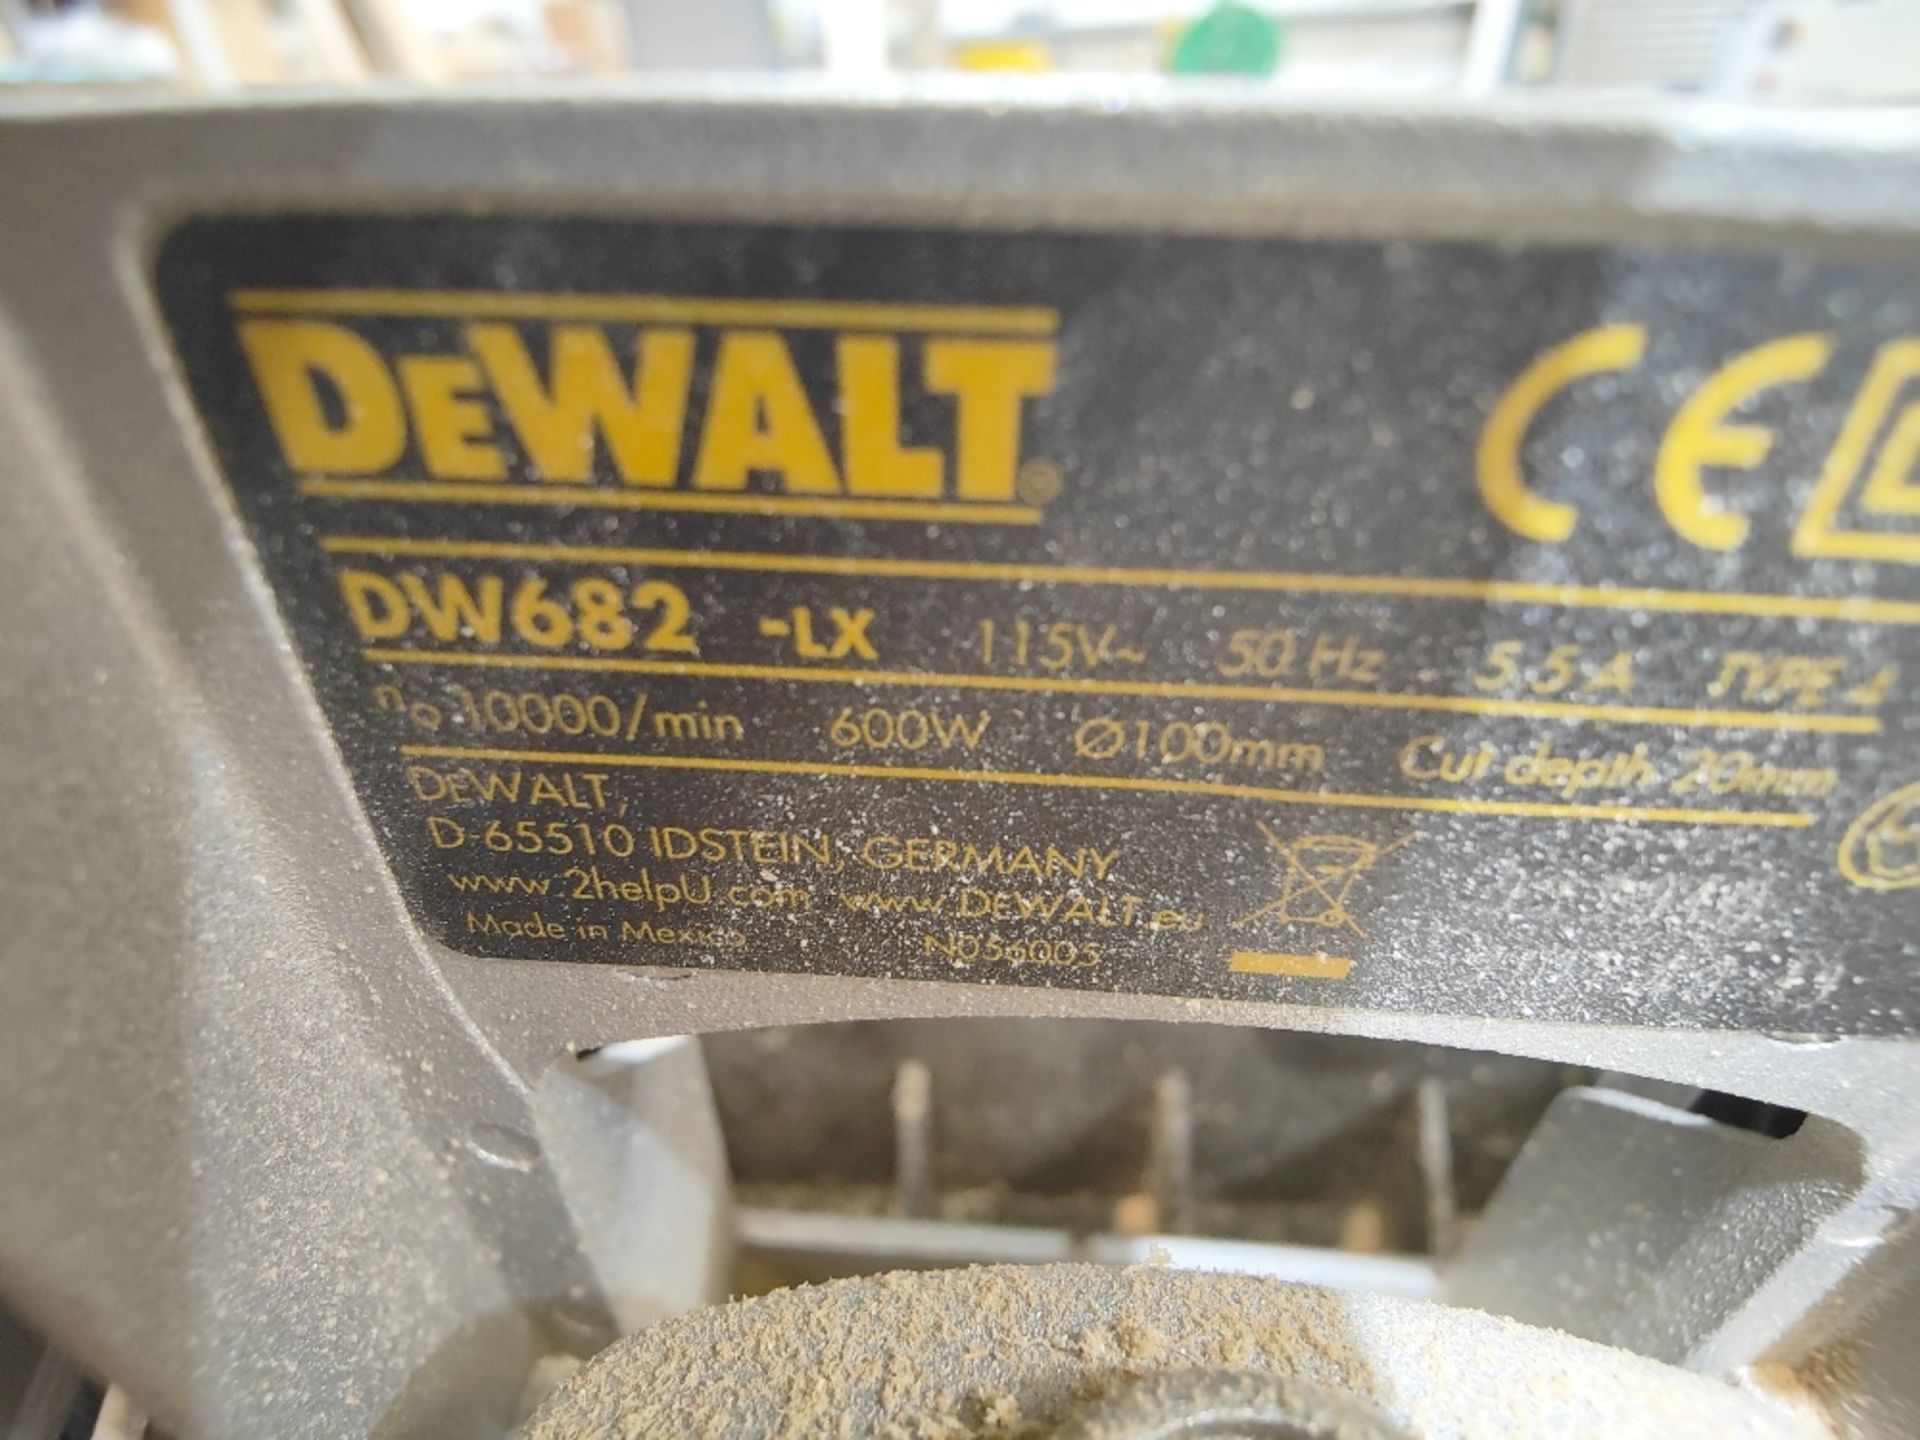 DeWalt DW682-LX 110V biscuit jointer - Image 3 of 3